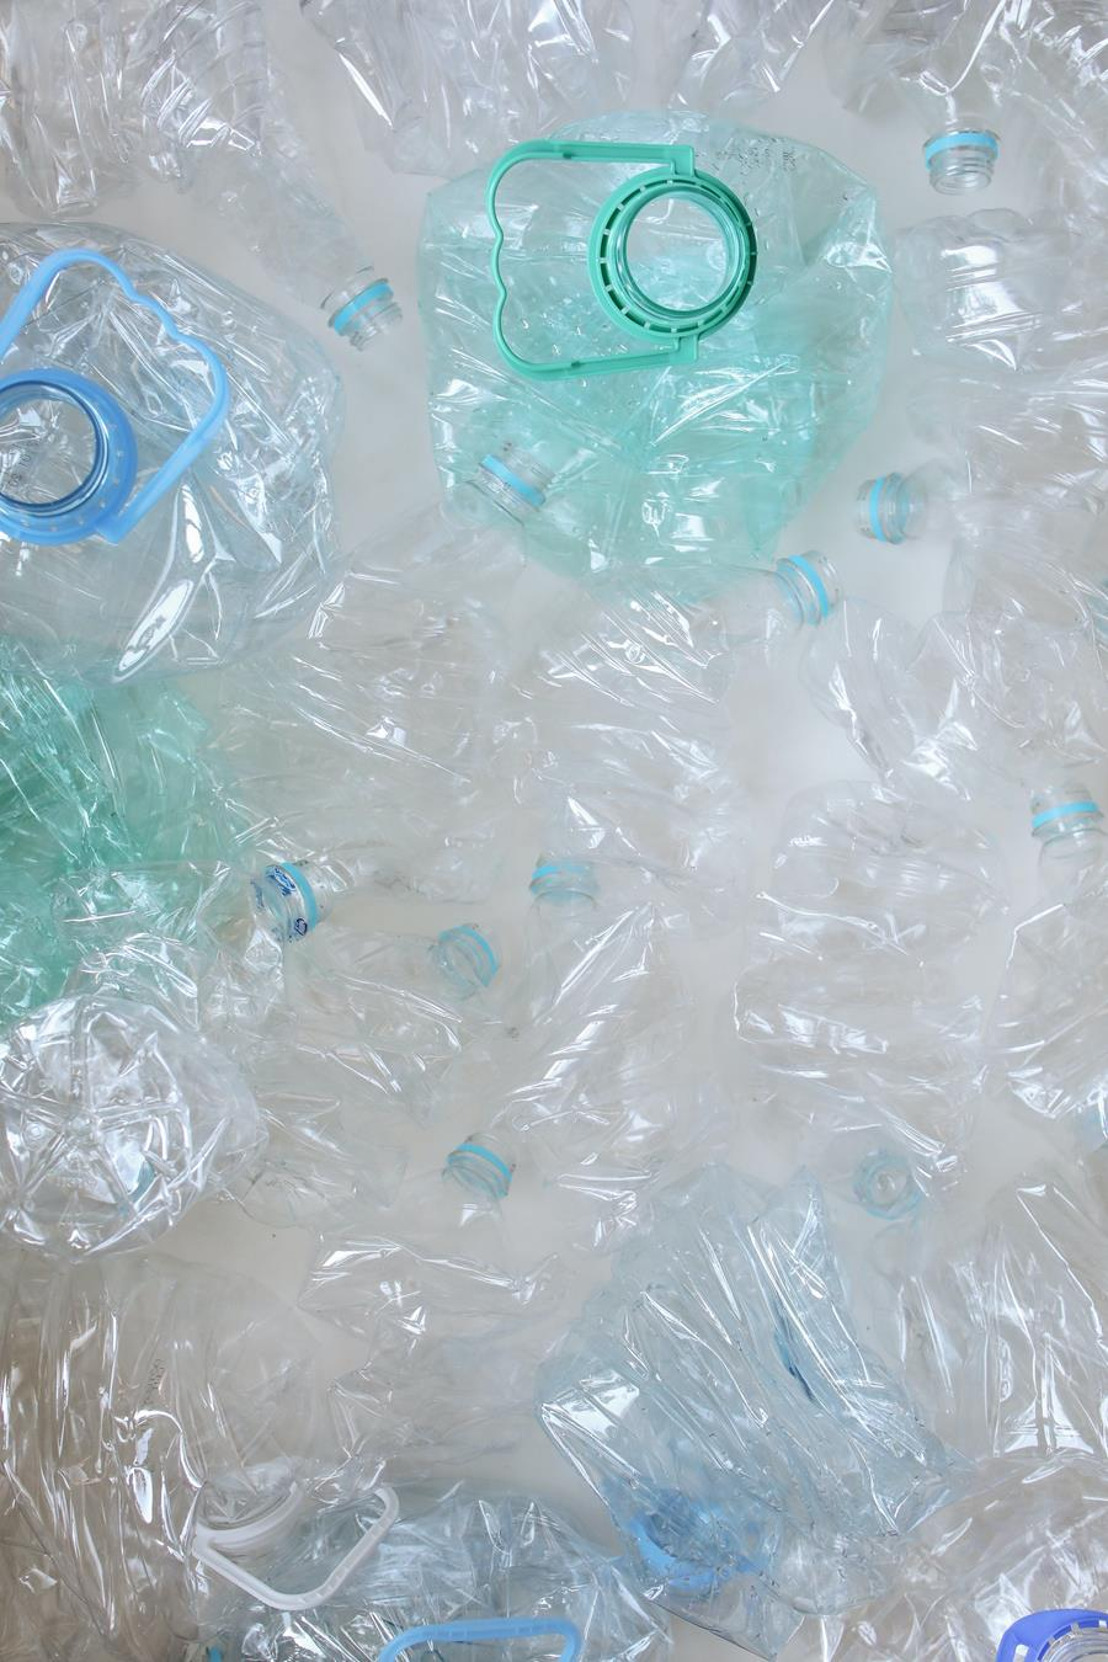 Stap voor stap naar een betere toekomst – GROHE streeft naar plasticvrije verpakkingen